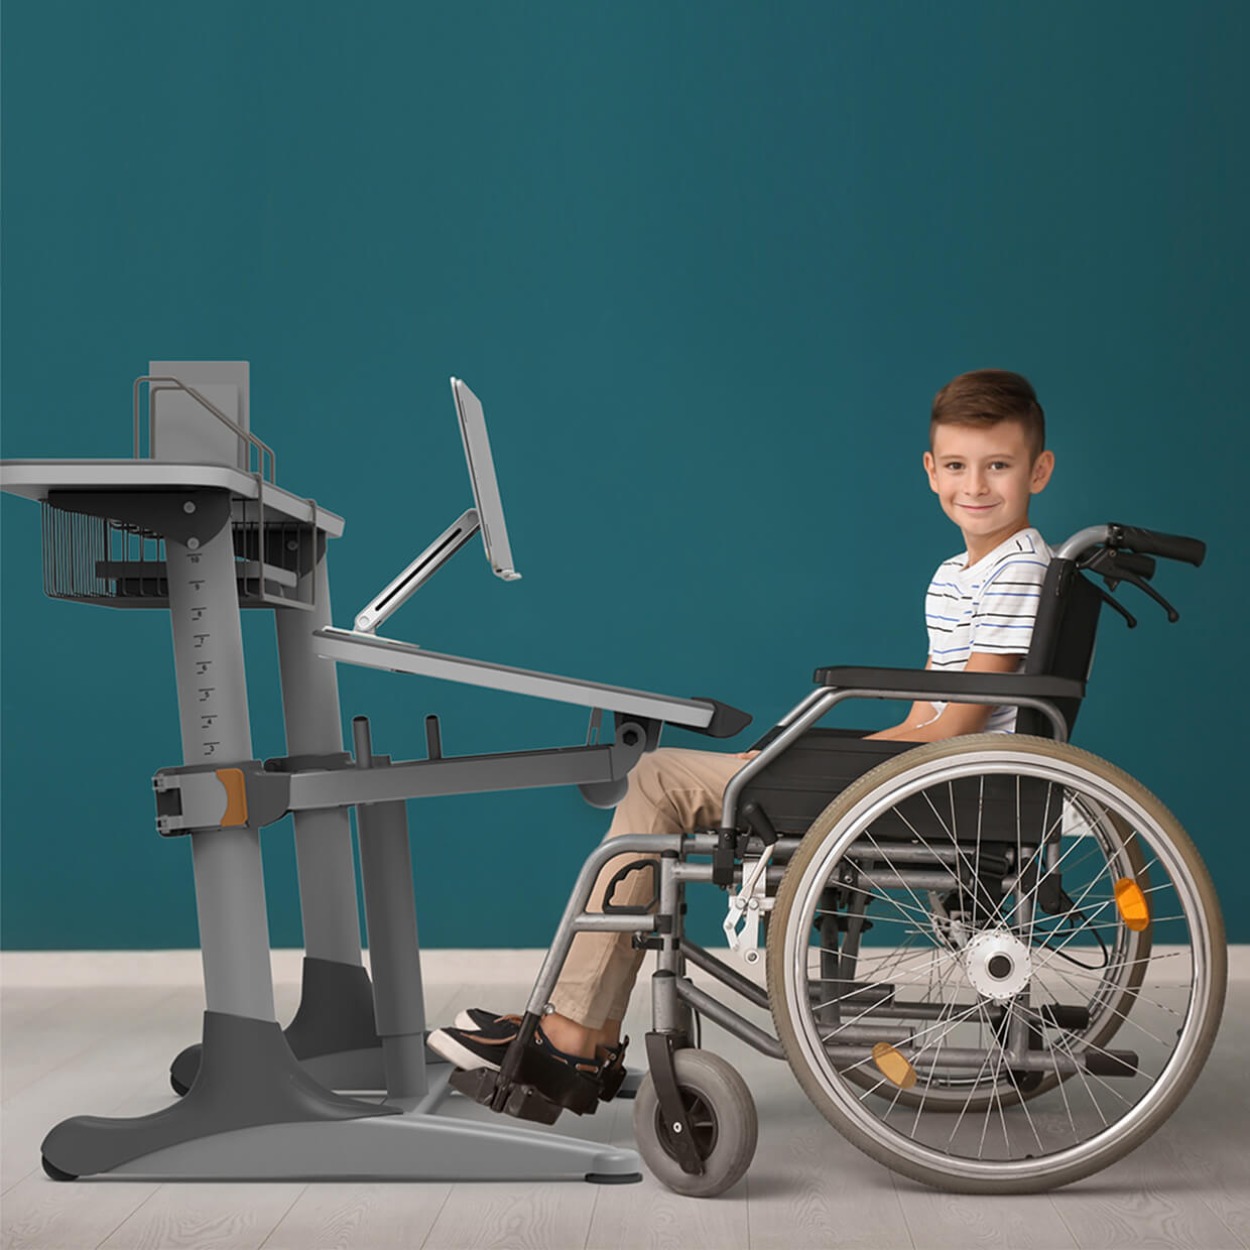 니스툴그로우 높이각도조절 스탠다드 책상 휠체어 사용 어린이용 30% 할인상품